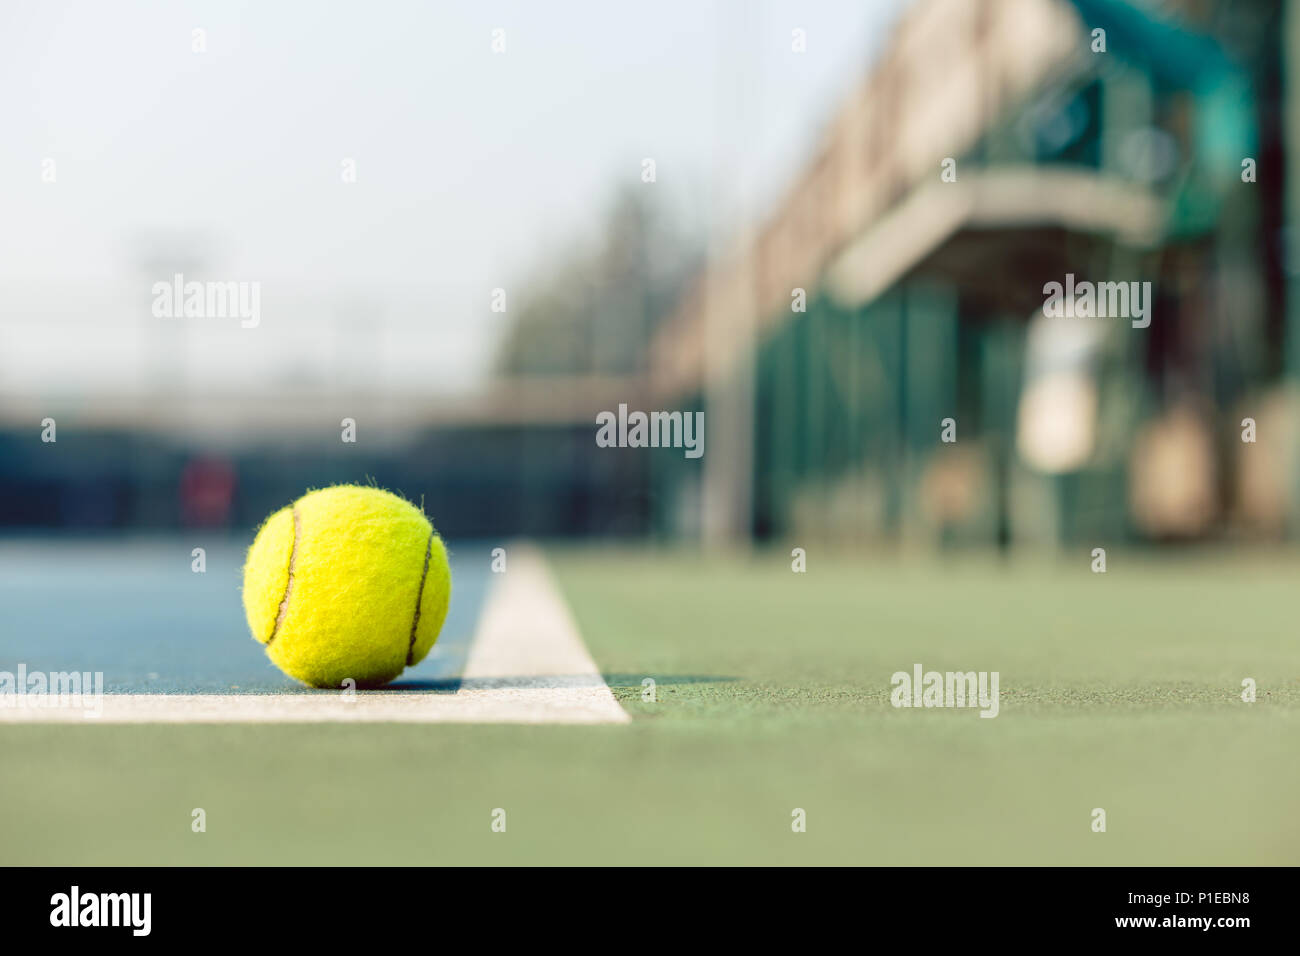 Hoher winkel Nahaufnahme eines fluoreszierenden gelben Tennisball im Hof Stockfoto